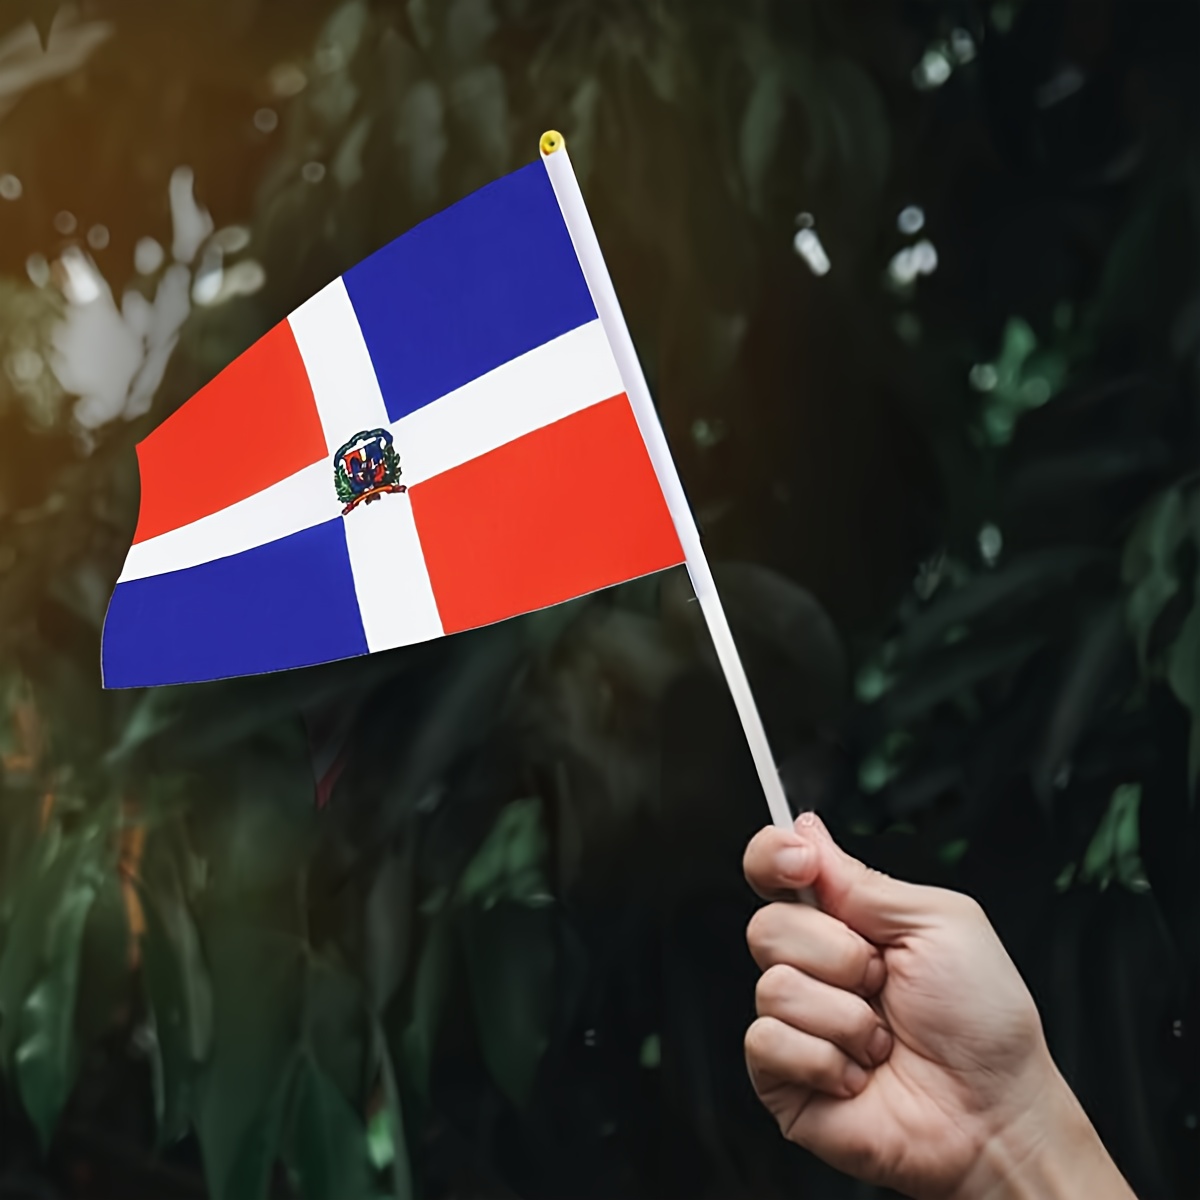 Comprarbanderas.es - Esta bandera personalizada de #Tomorrowland se va para  la República Dominicana ¿Quieres la tuya? Puedes personalizarla con el país  que quieras 😉 bit.ly/TomorrowlandBandera